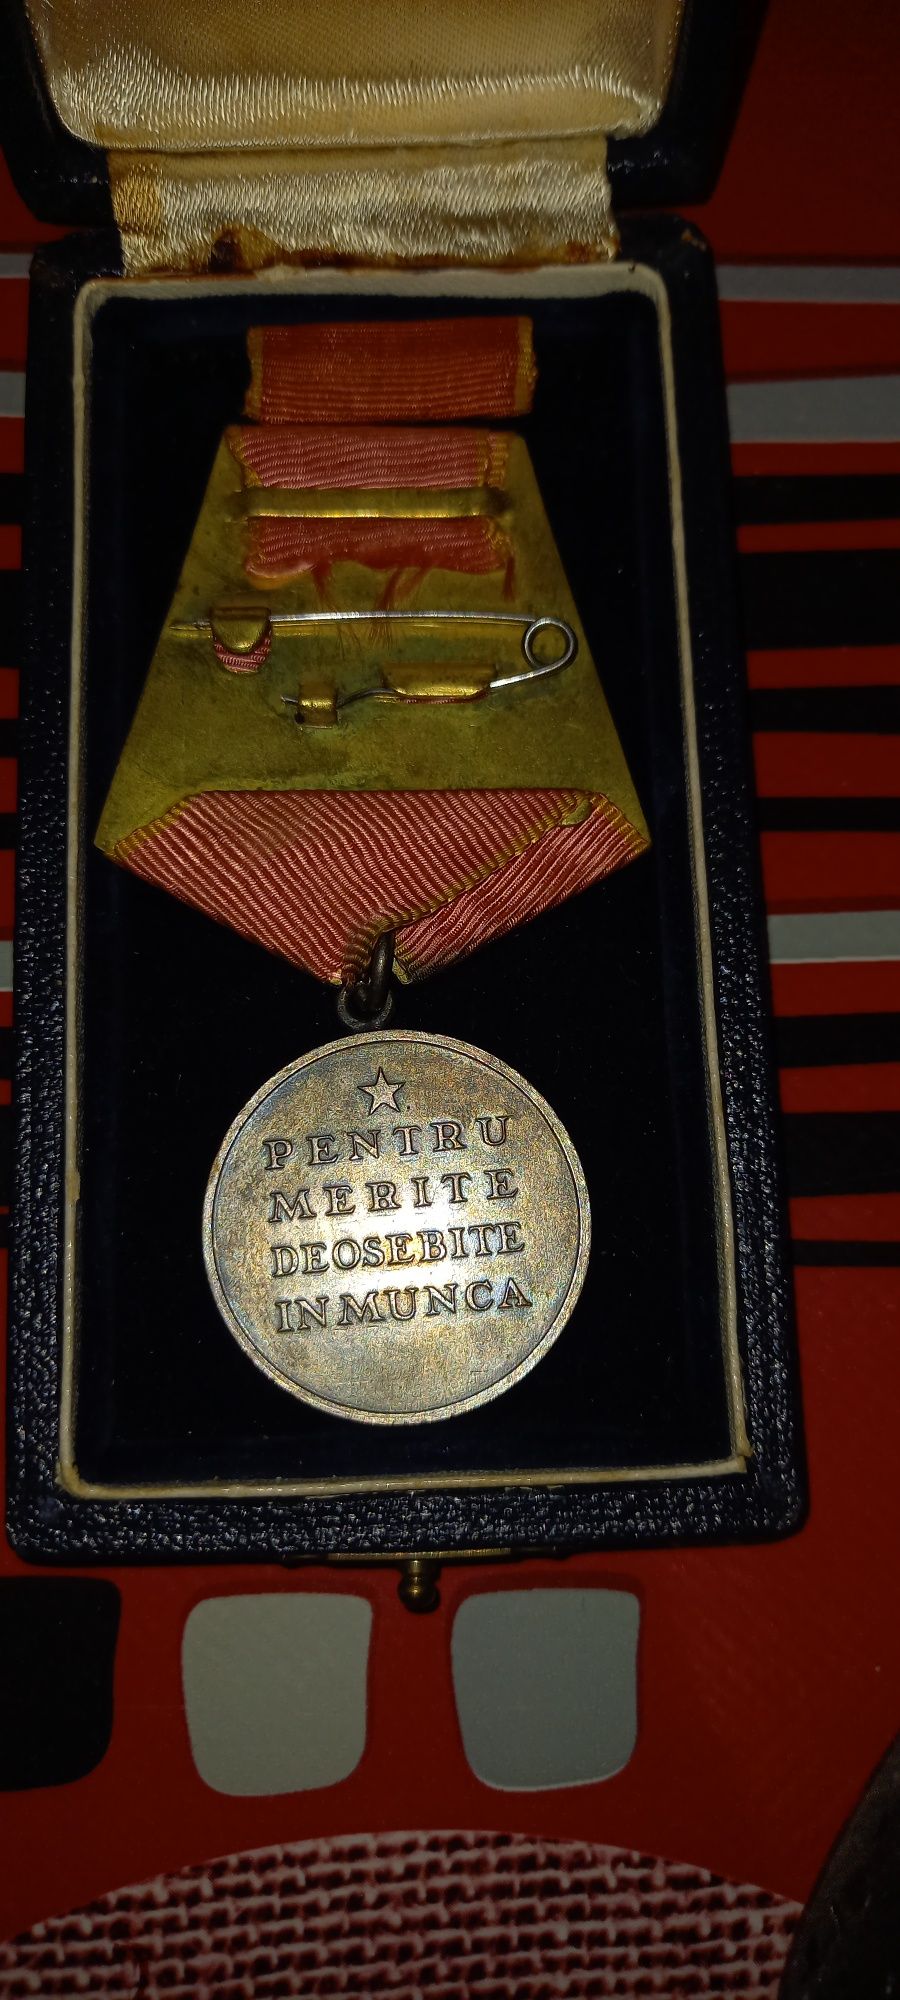 Lot insigne/medali vechi din perioada comunista